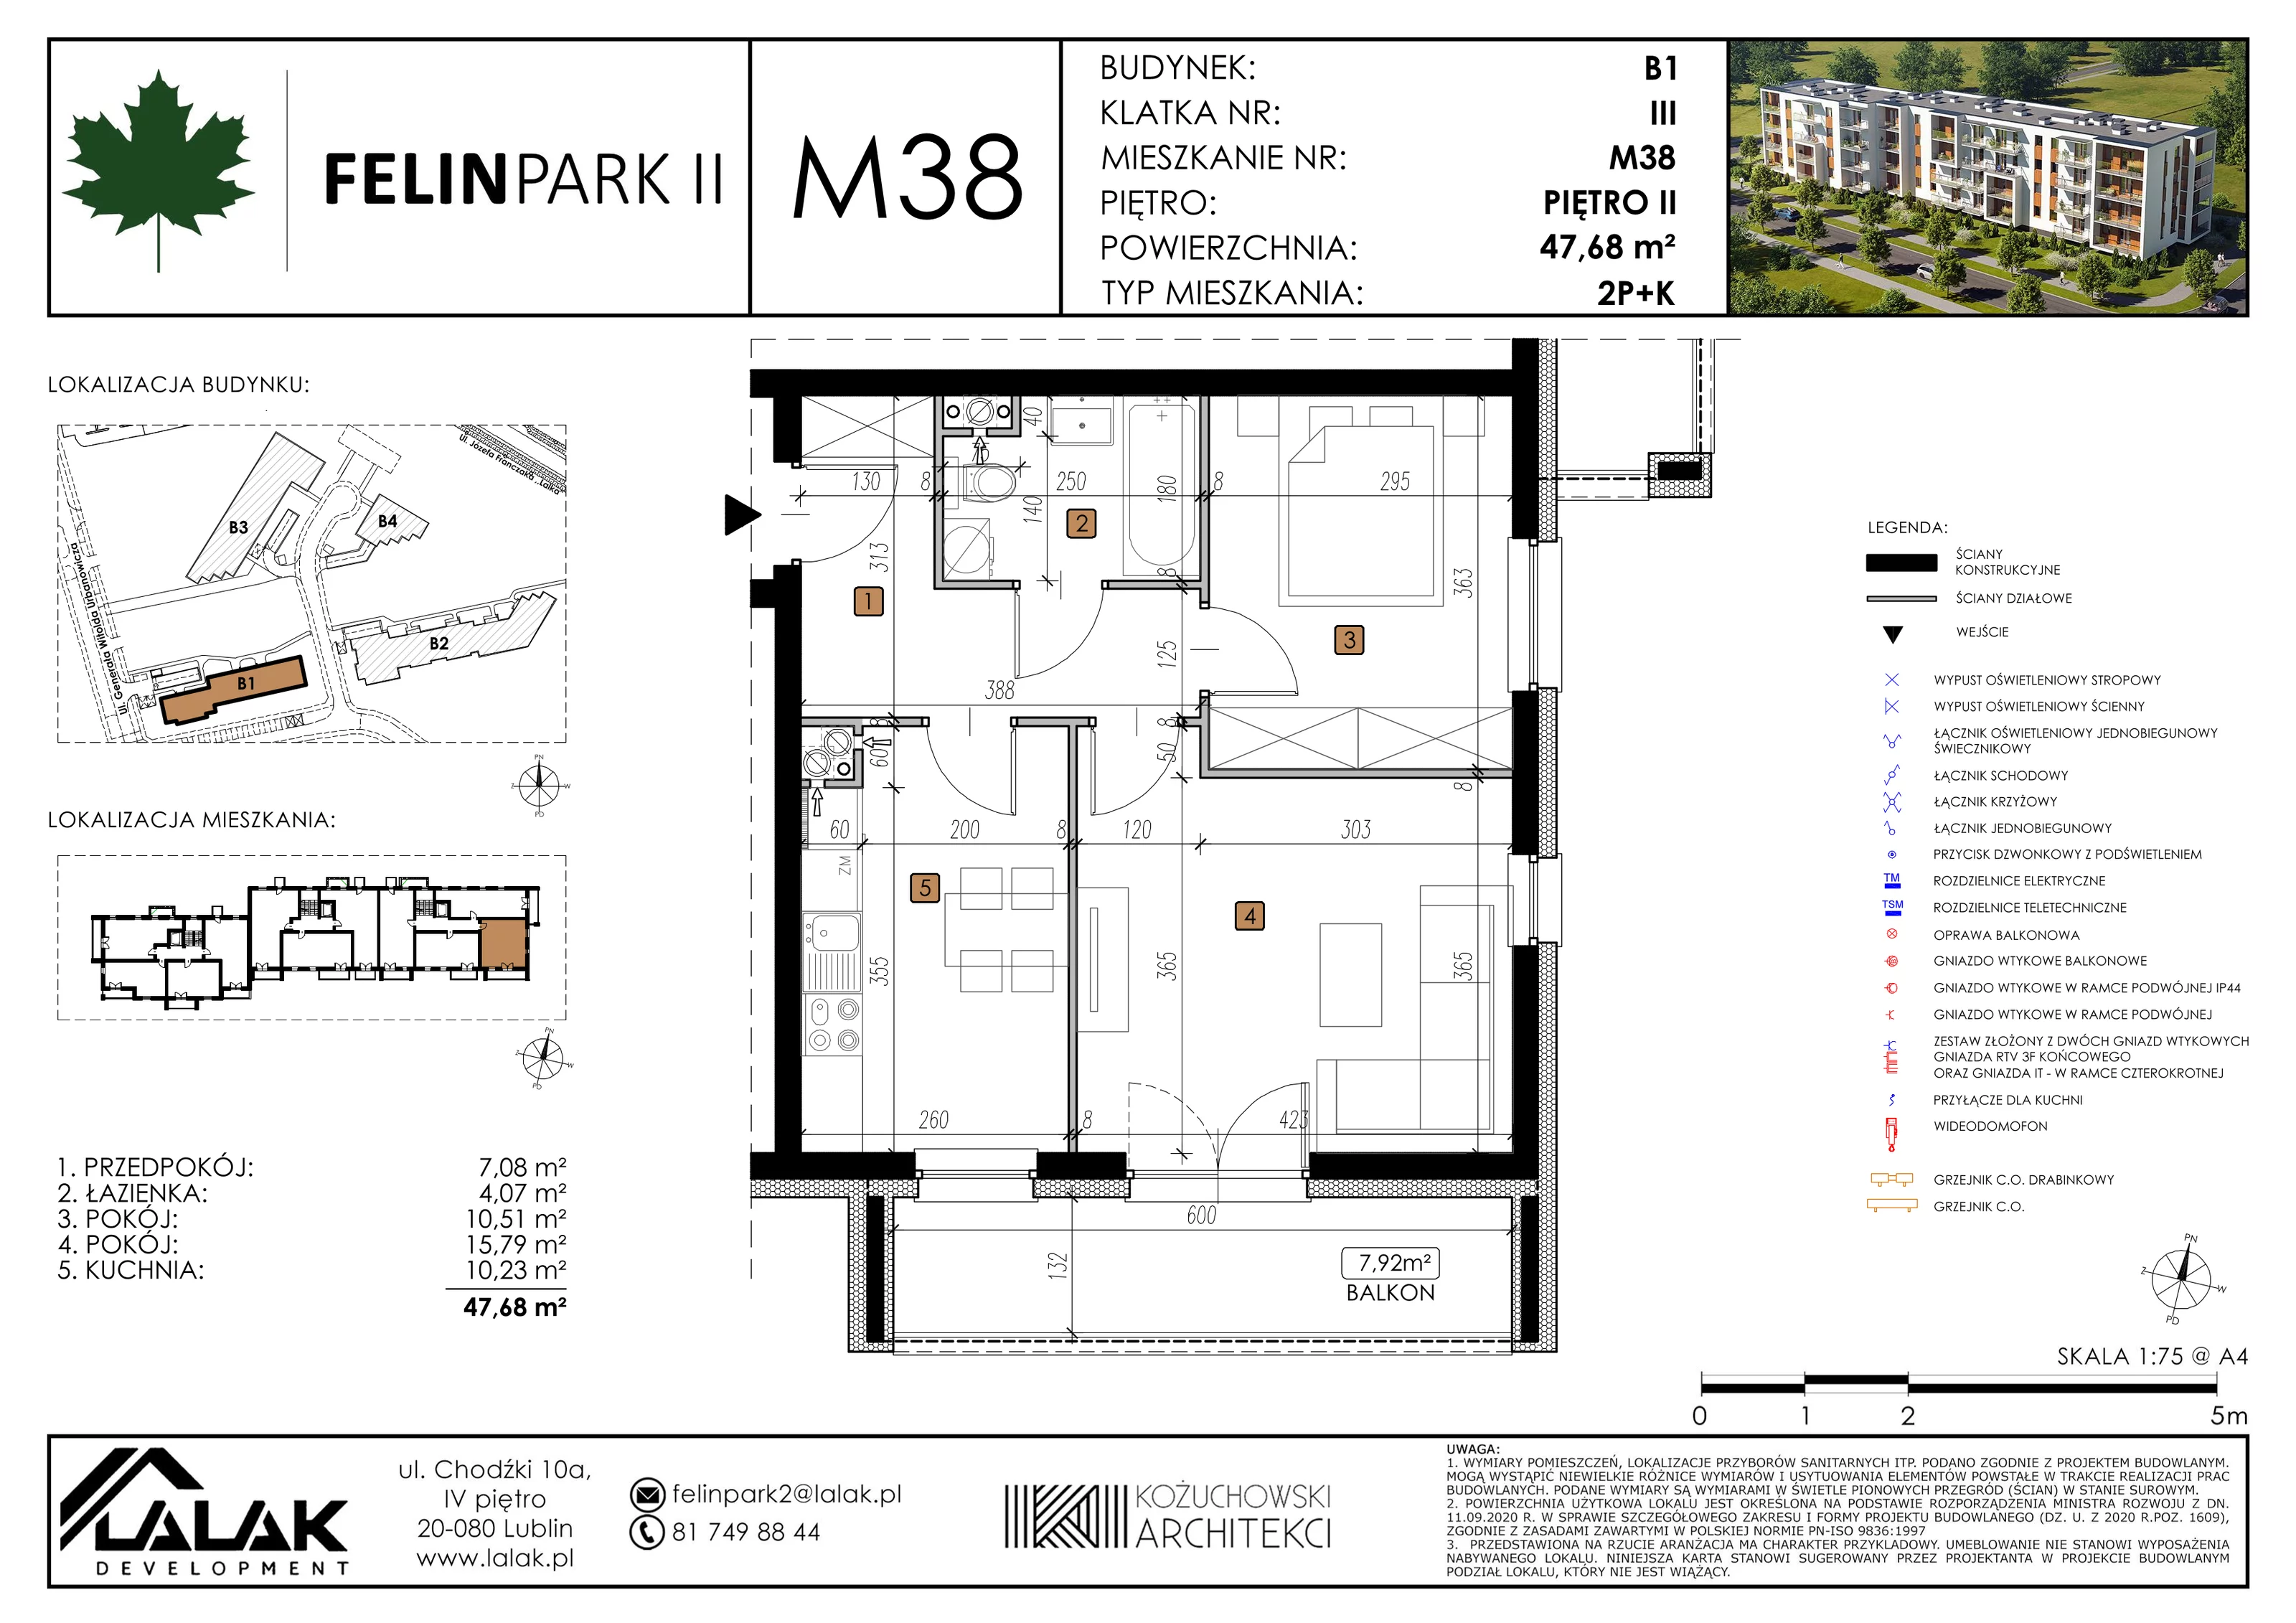 Mieszkanie 47,68 m², piętro 2, oferta nr B1_M38/I, Felin Park II, Lublin, Felin, ul. gen. Stanisława Skalskiego 8-10